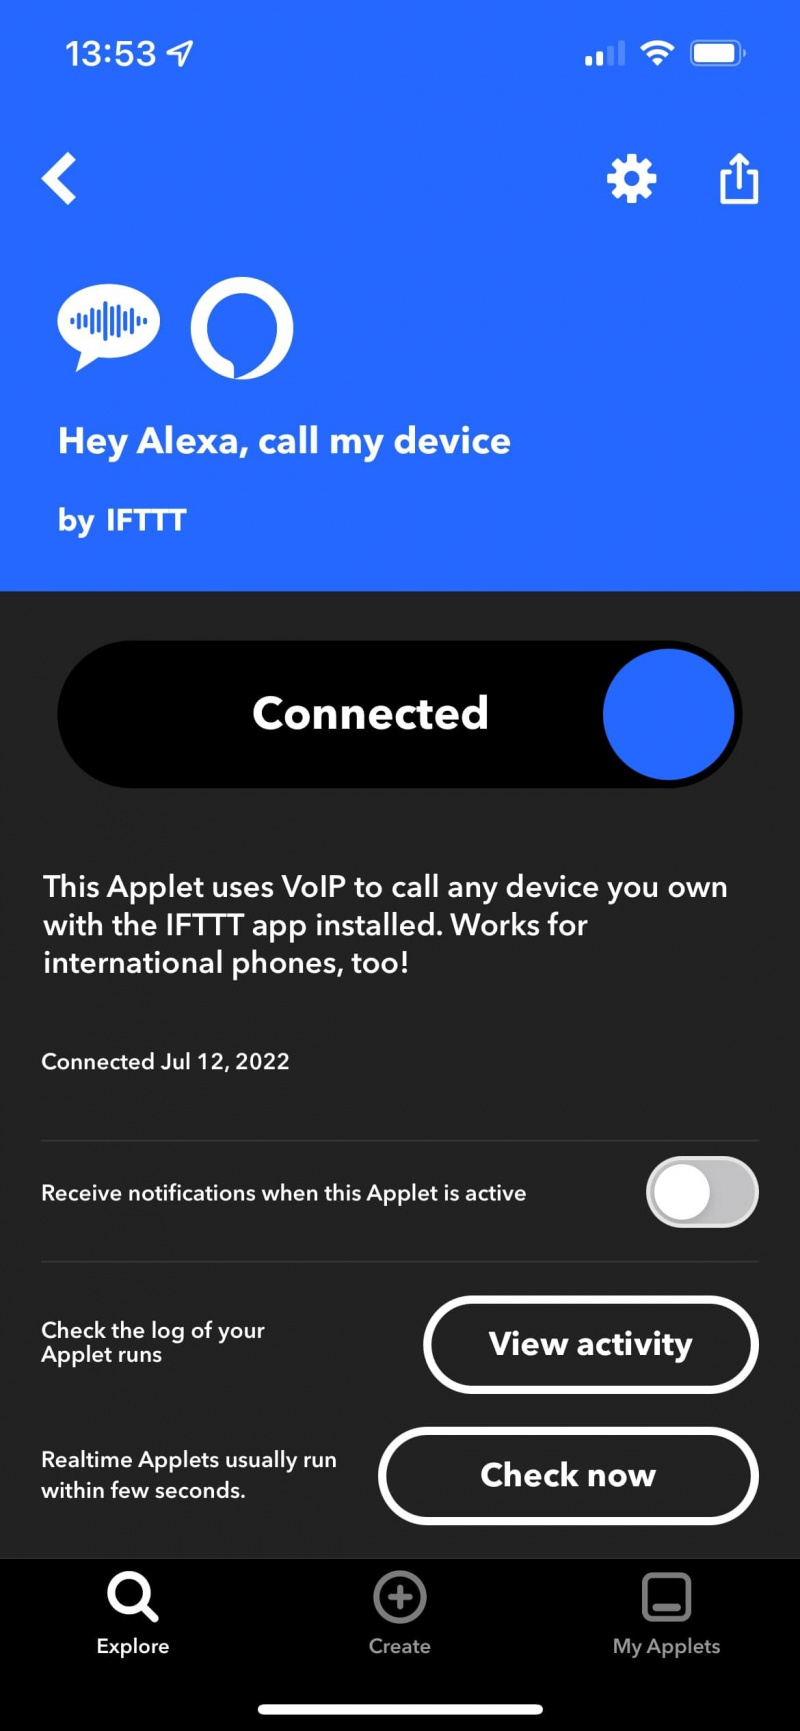   연결된 것으로 표시되는 IFTTT 애플릿